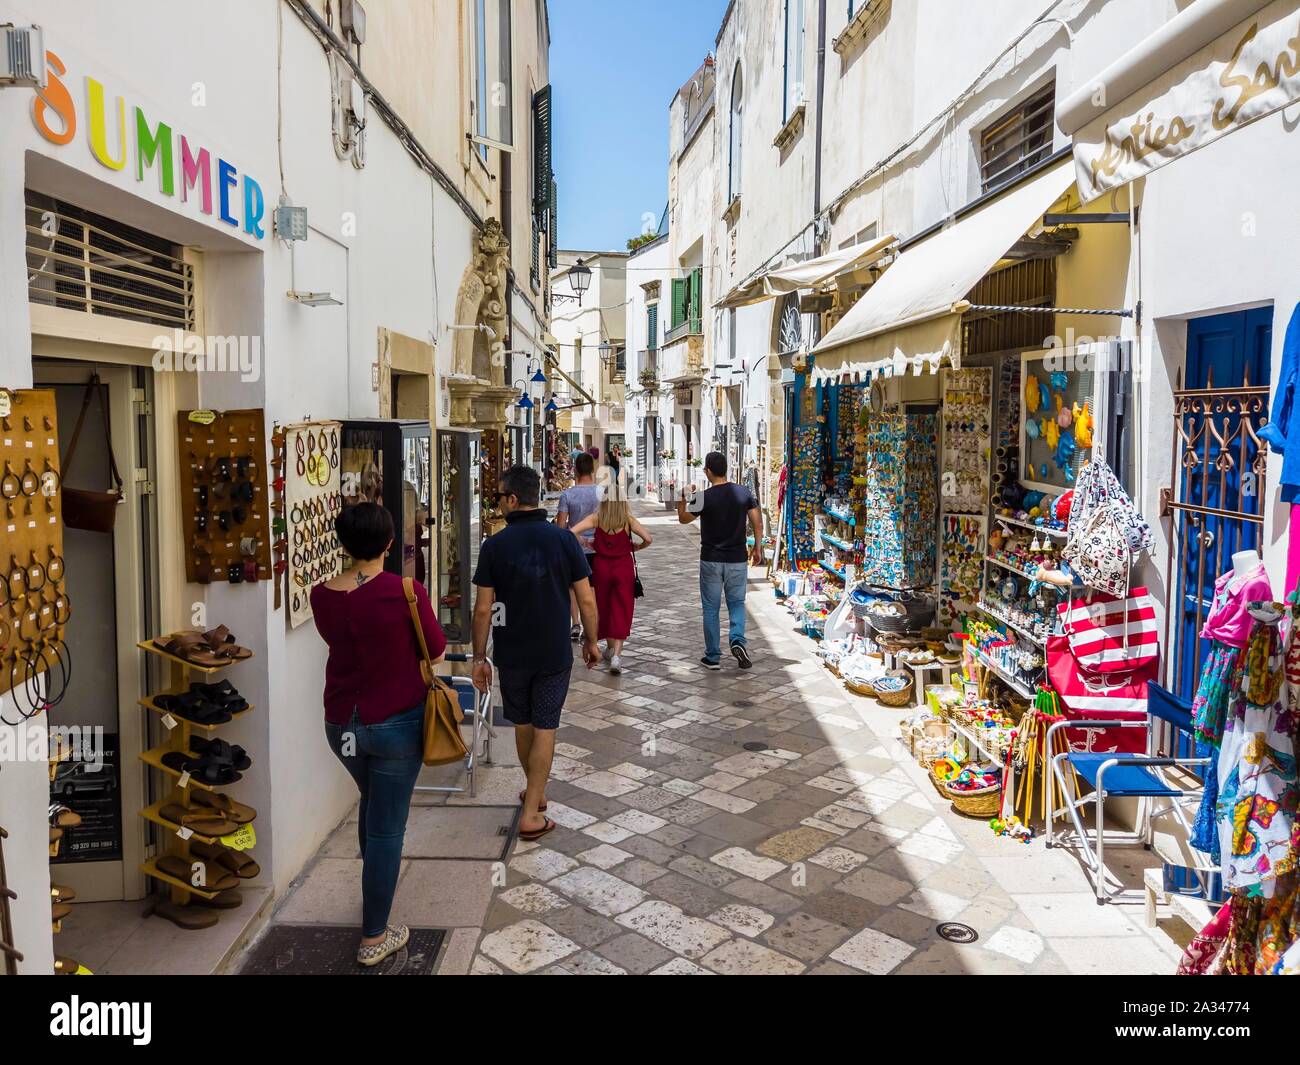 Allée avec des boutiques de souvenirs dans la vieille ville, Otranto, Lecce, Province de la péninsule Salentine, Pouilles, Italie Banque D'Images